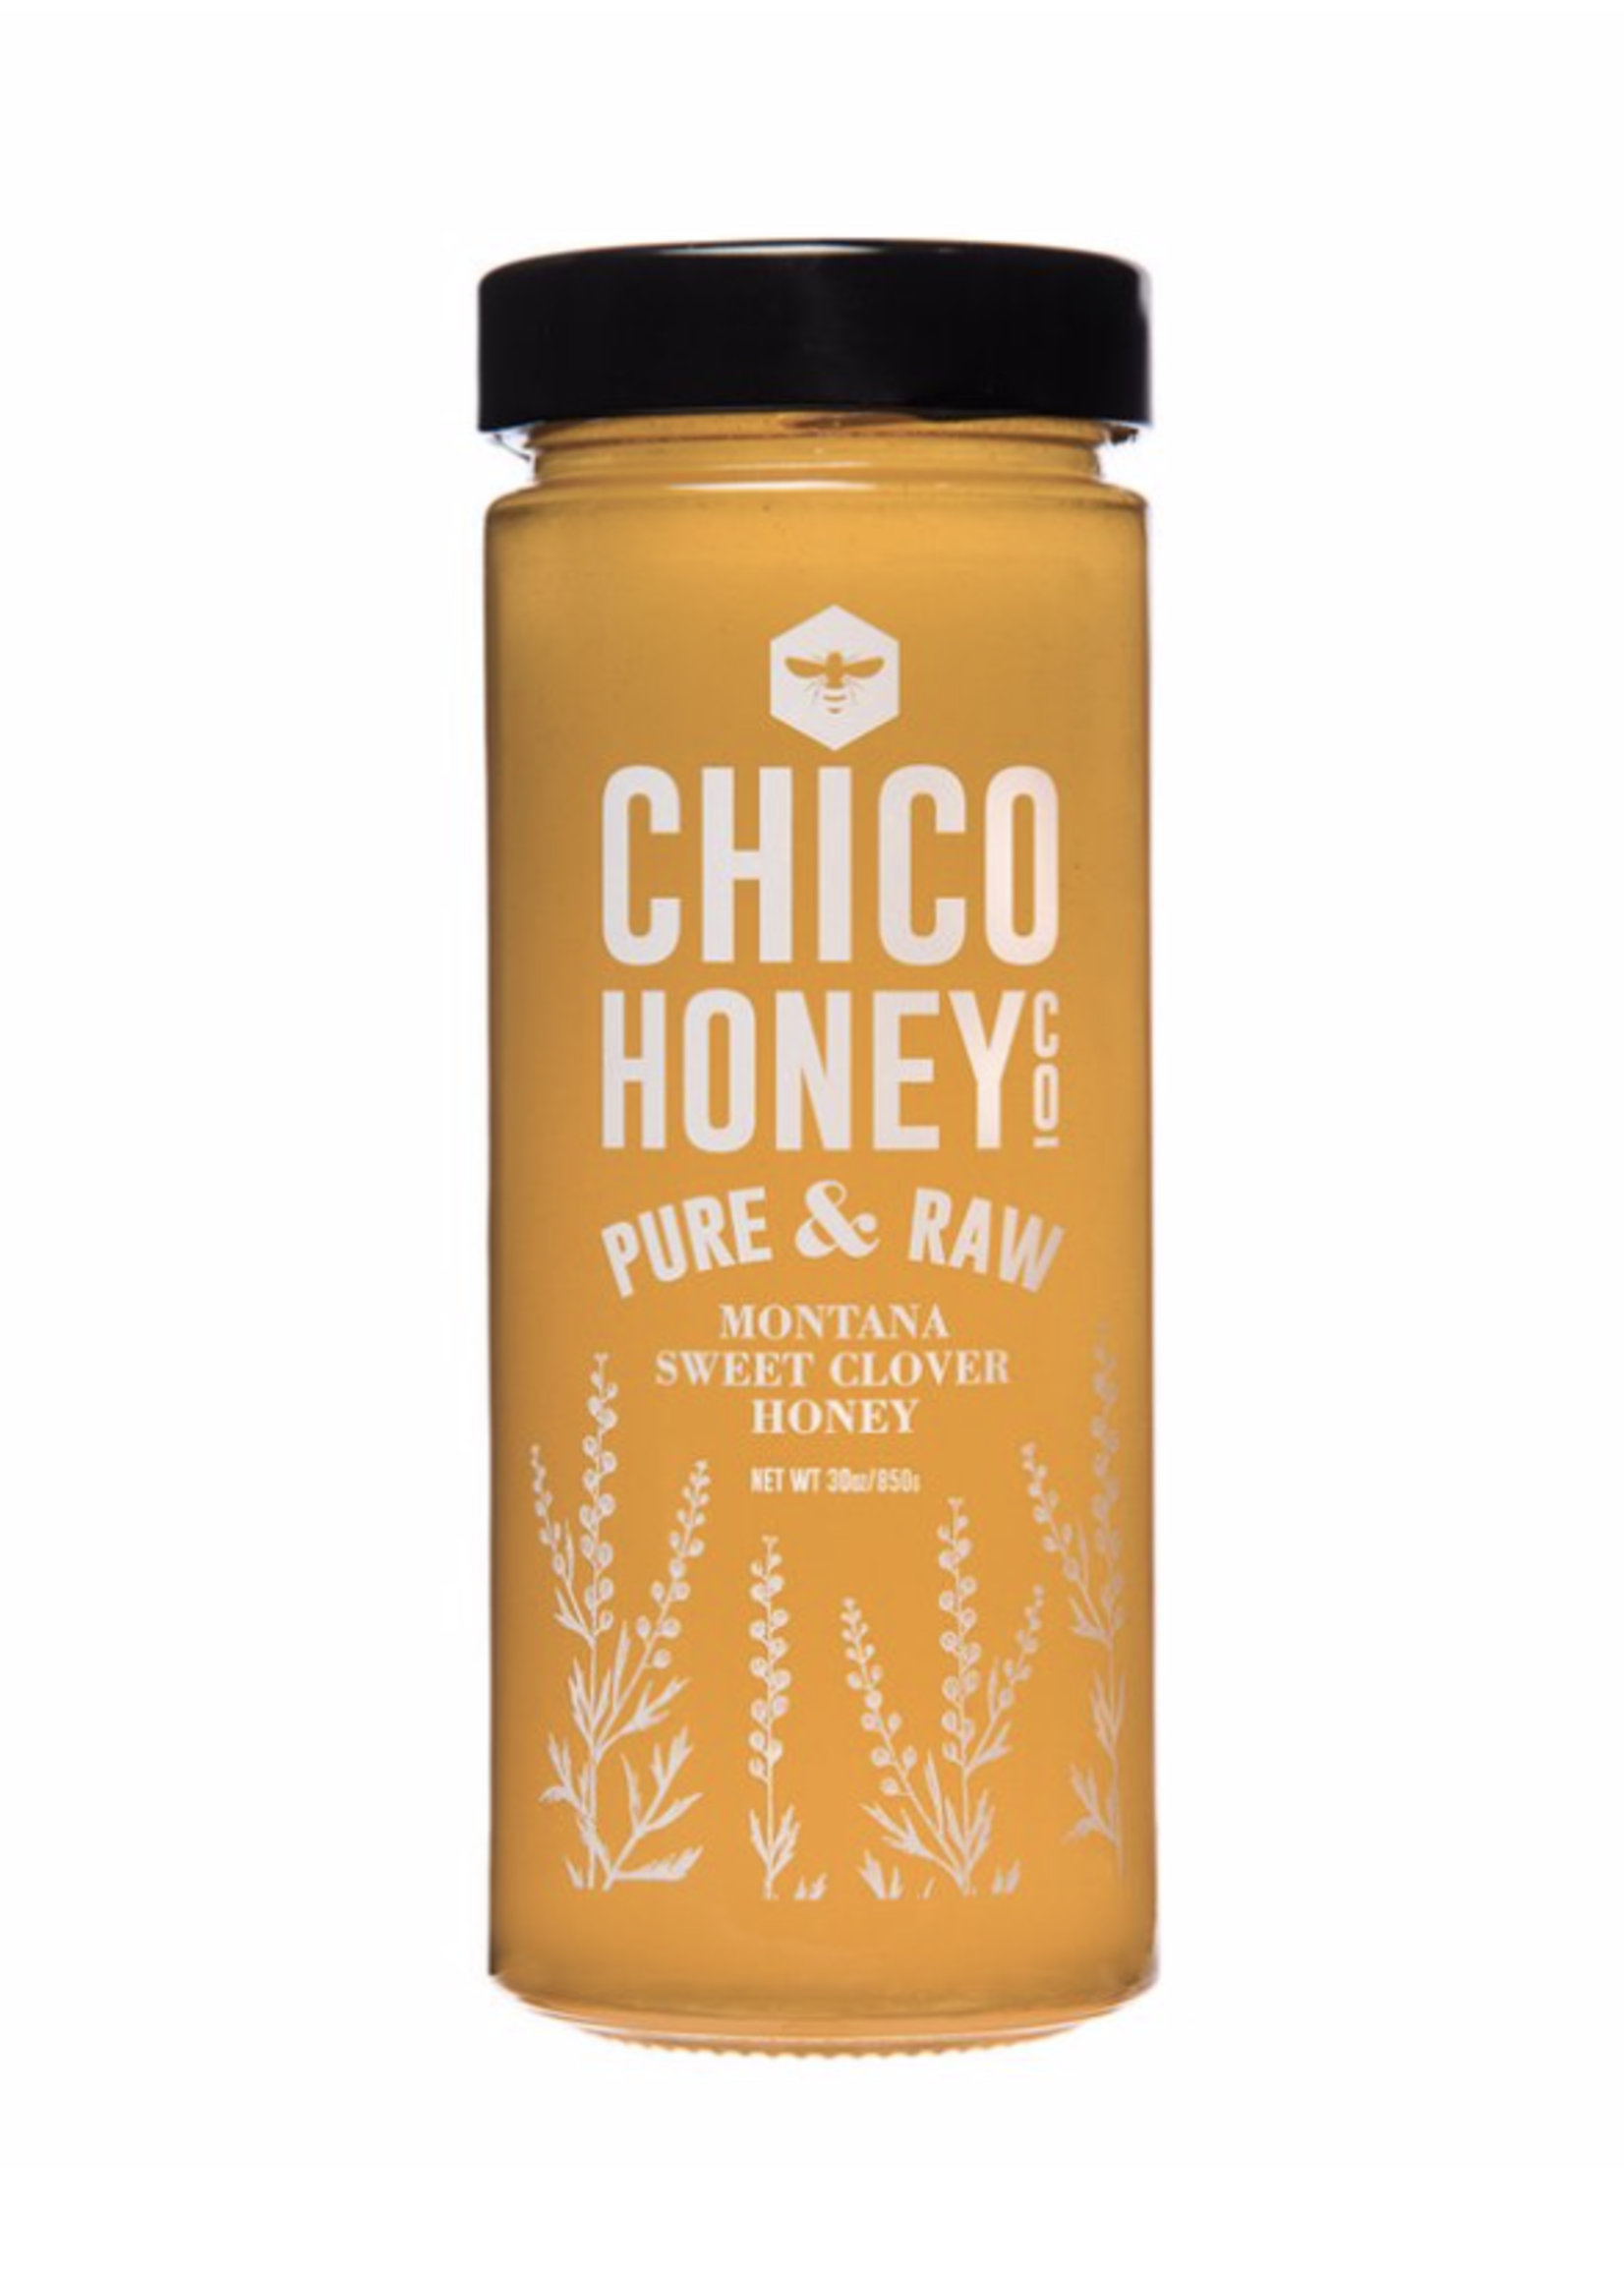 Chico Honey Co Olivares Honeey Bees Chico Honey Co Montana Sweet Clover Honey 30oz